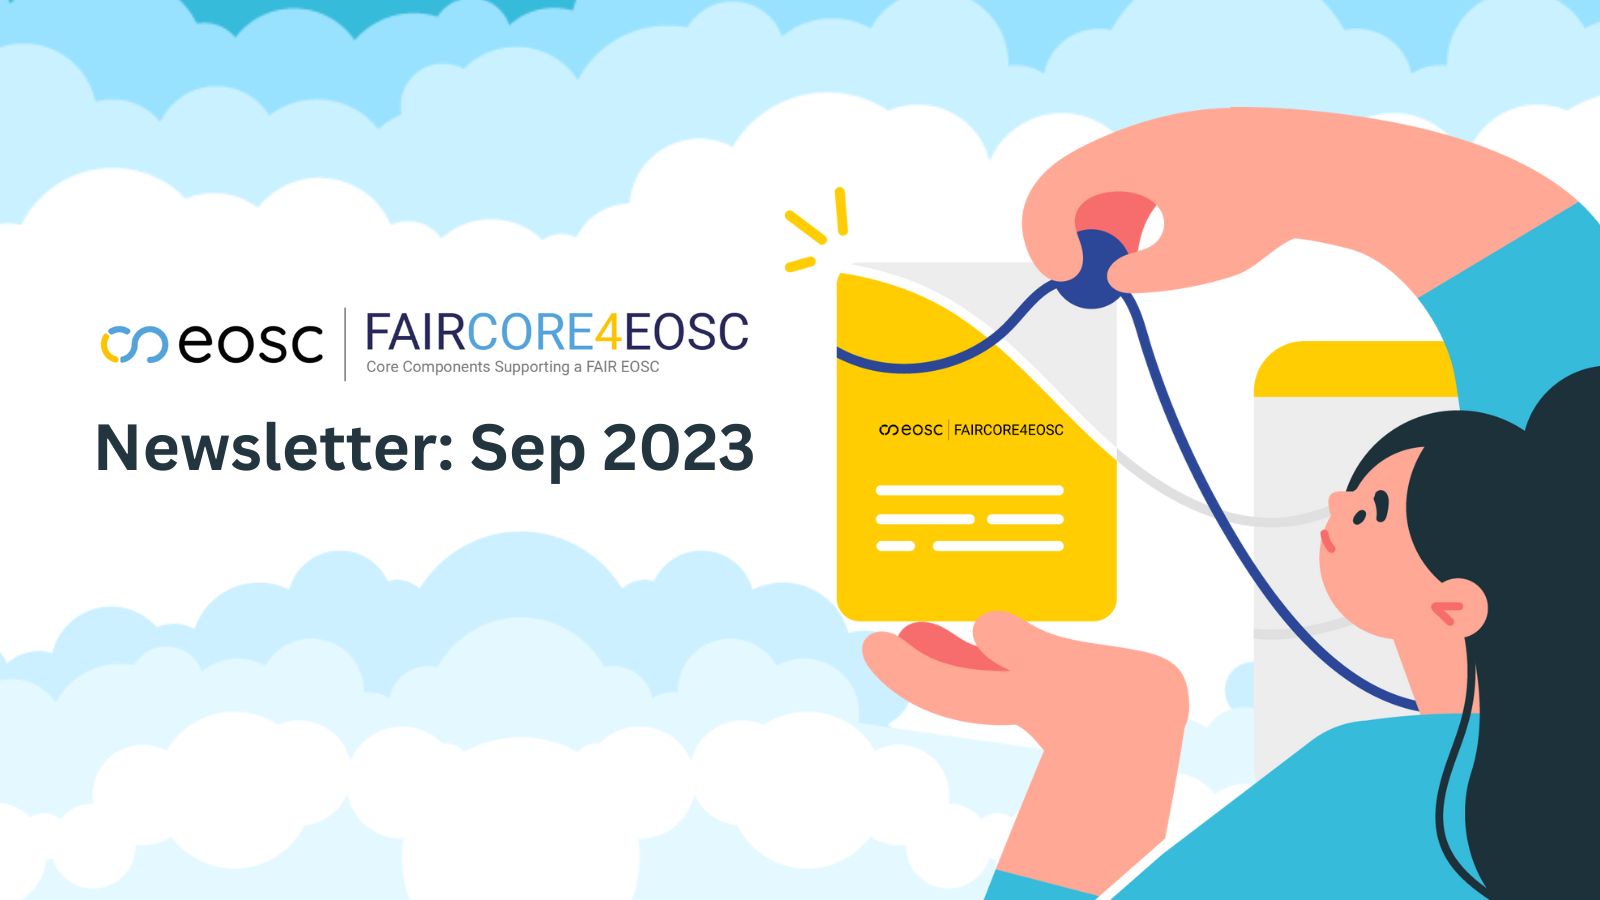 FAIRCORE4EOSC September 2023 Newsletter